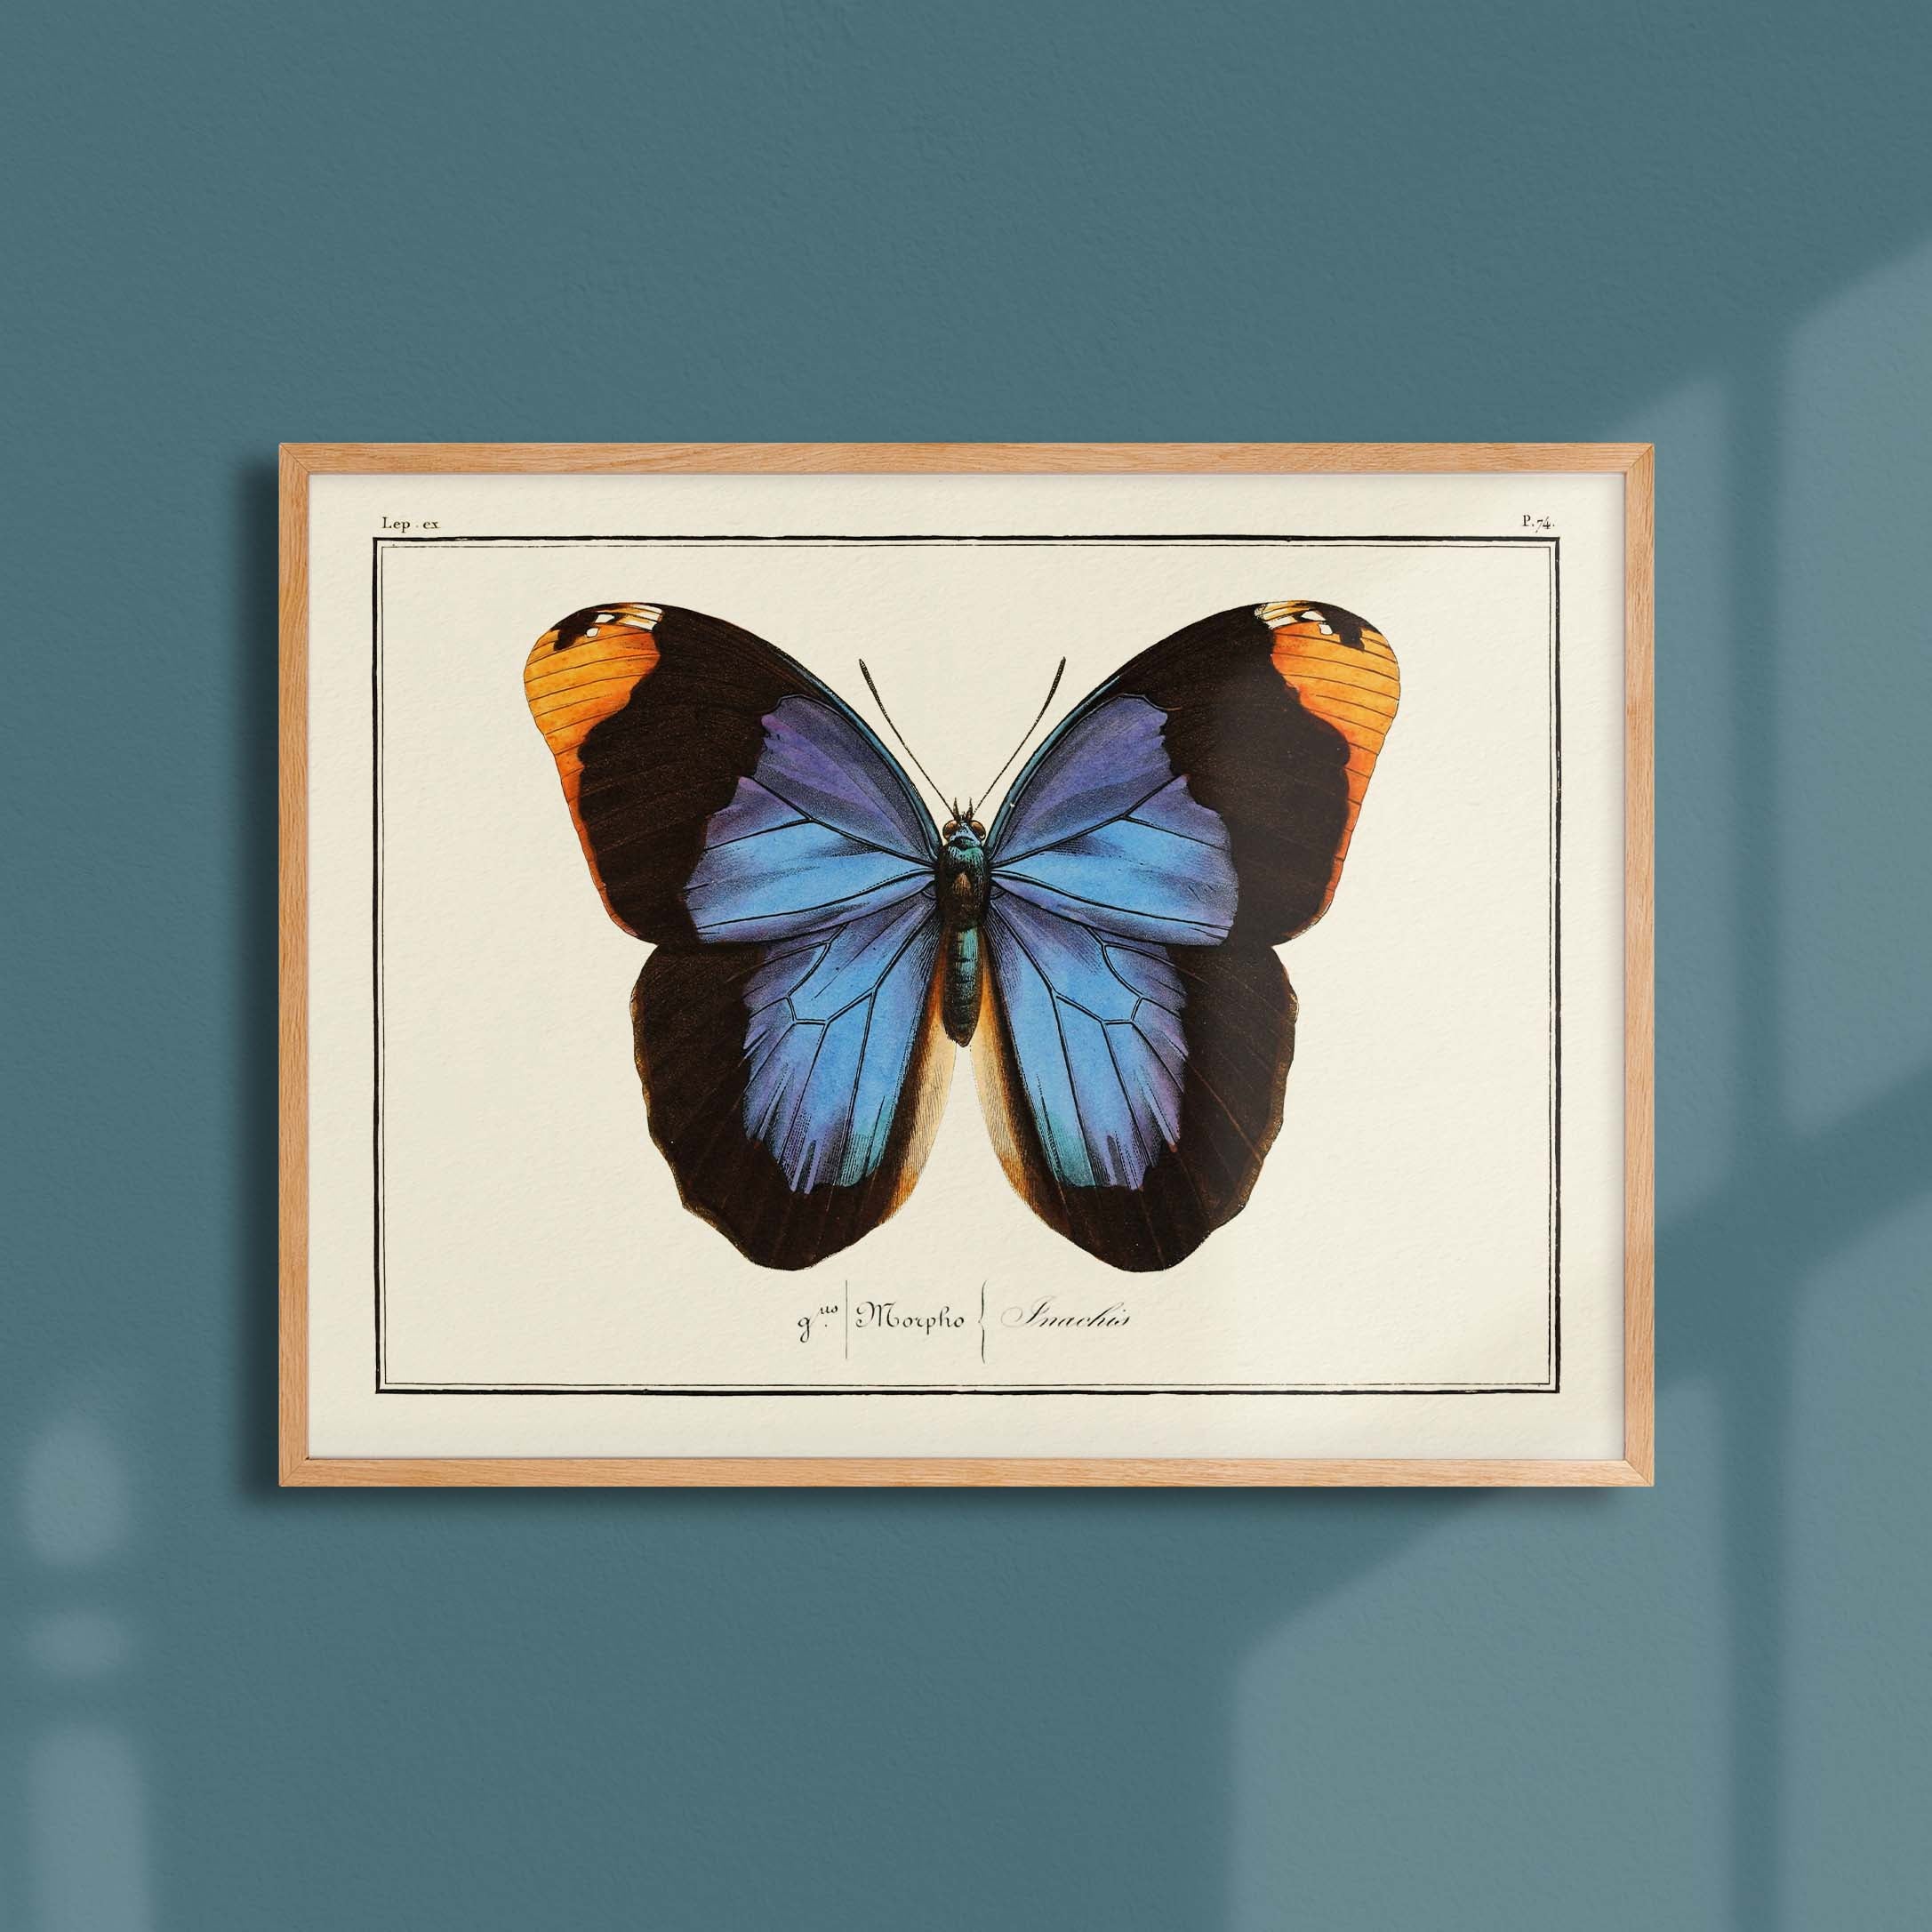 Planche d'entomologie Papillon - N°74-oneart.fr